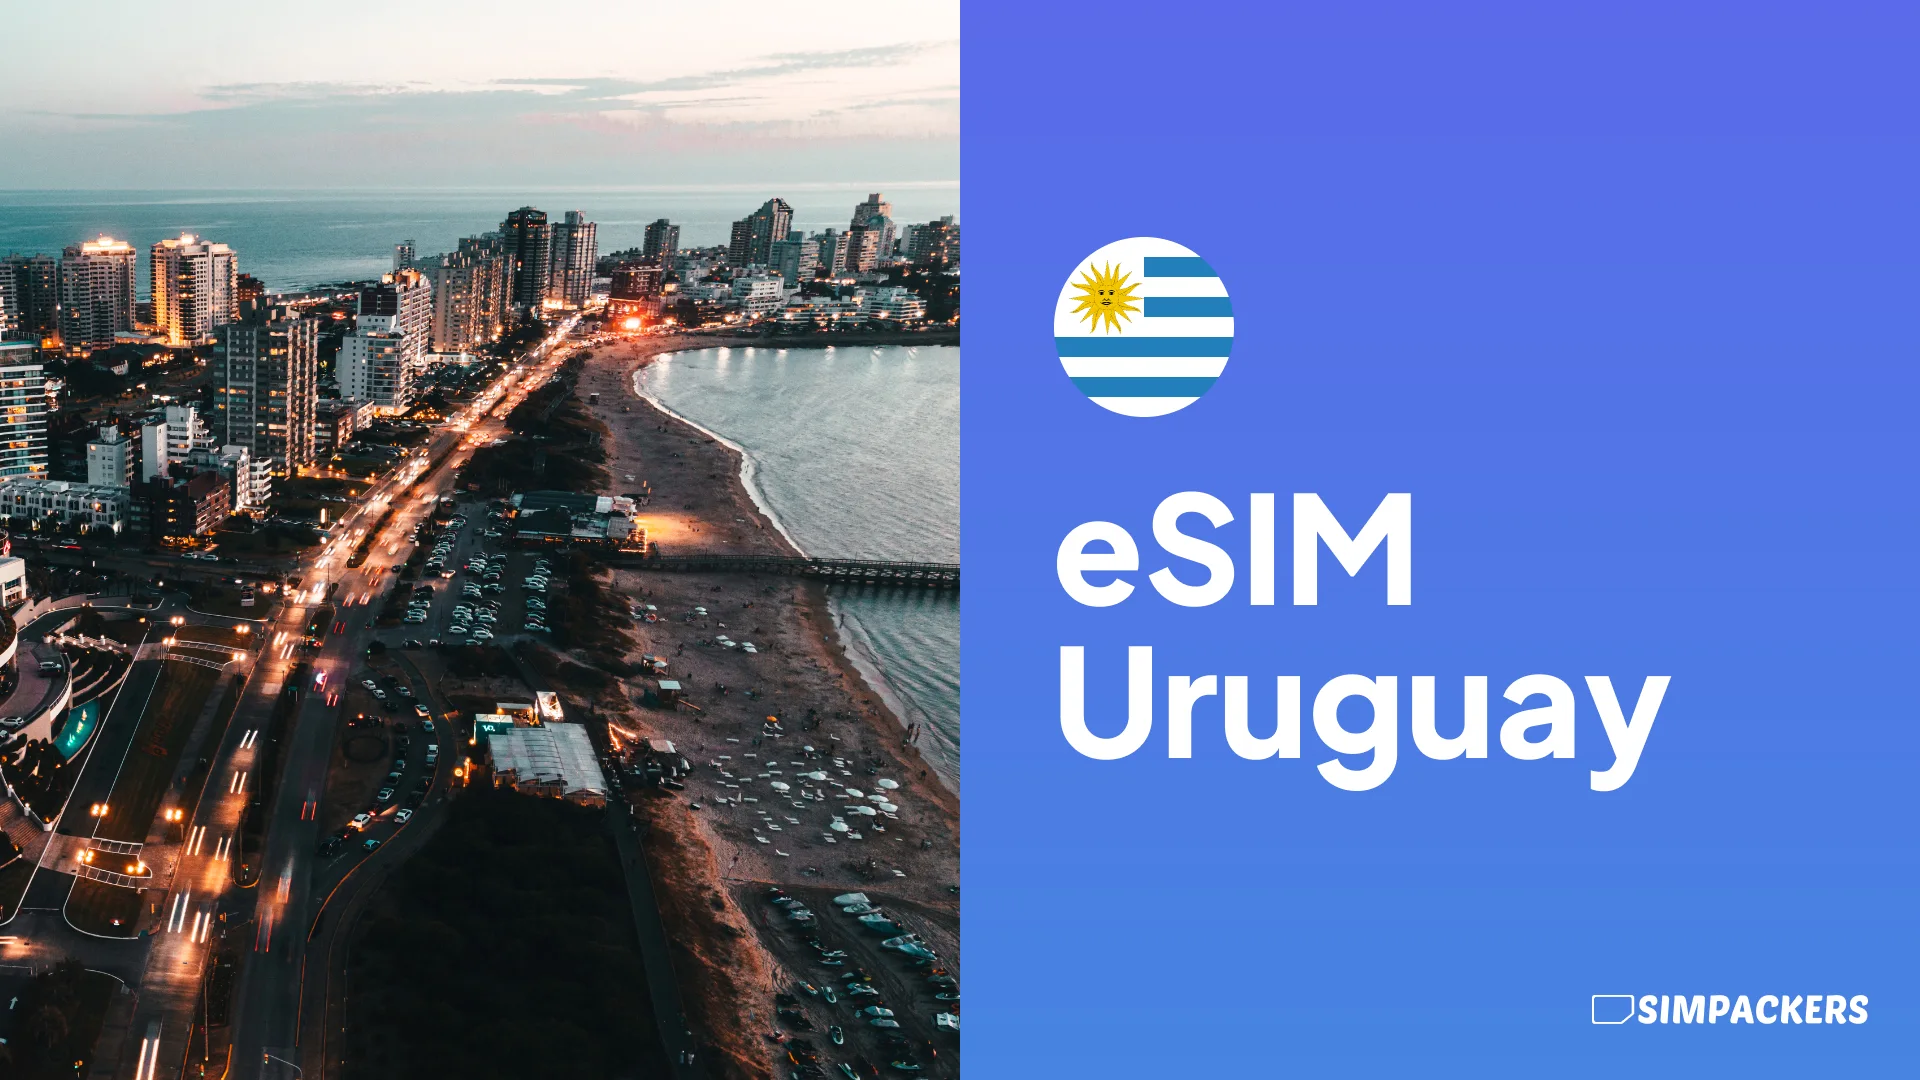 ES/FEATURED_IMAGES/esim-uruguay.webp